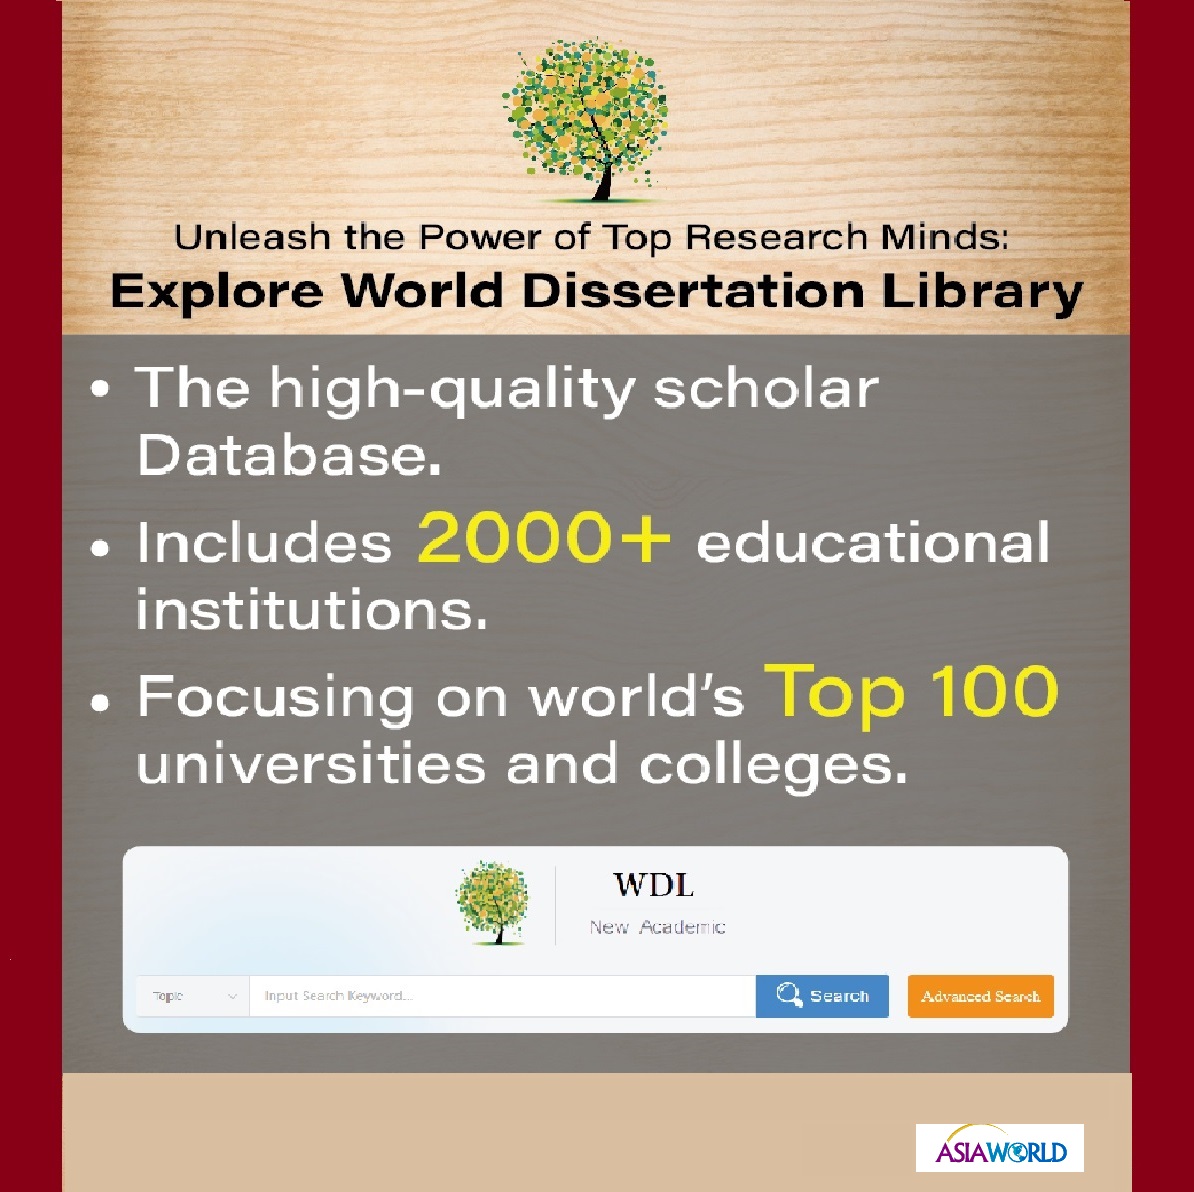 新增試用論文庫 : World Dissertation Library (WDL) 